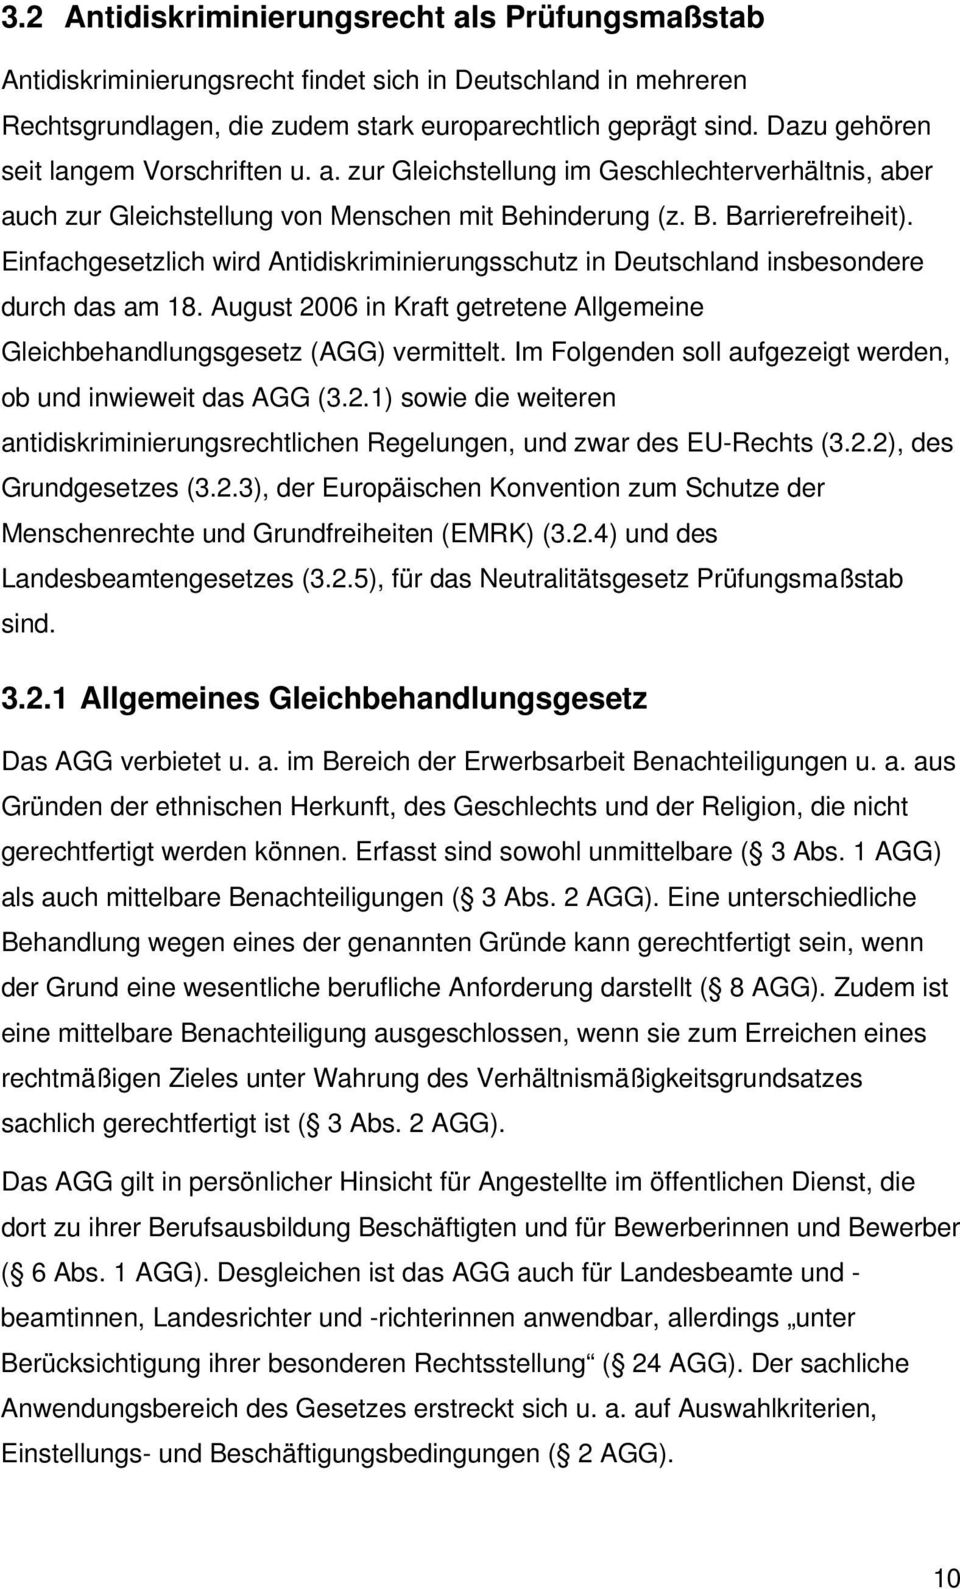 Einfachgesetzlich wird Antidiskriminierungsschutz in Deutschland insbesondere durch das am 18. August 2006 in Kraft getretene Allgemeine Gleichbehandlungsgesetz (AGG) vermittelt.